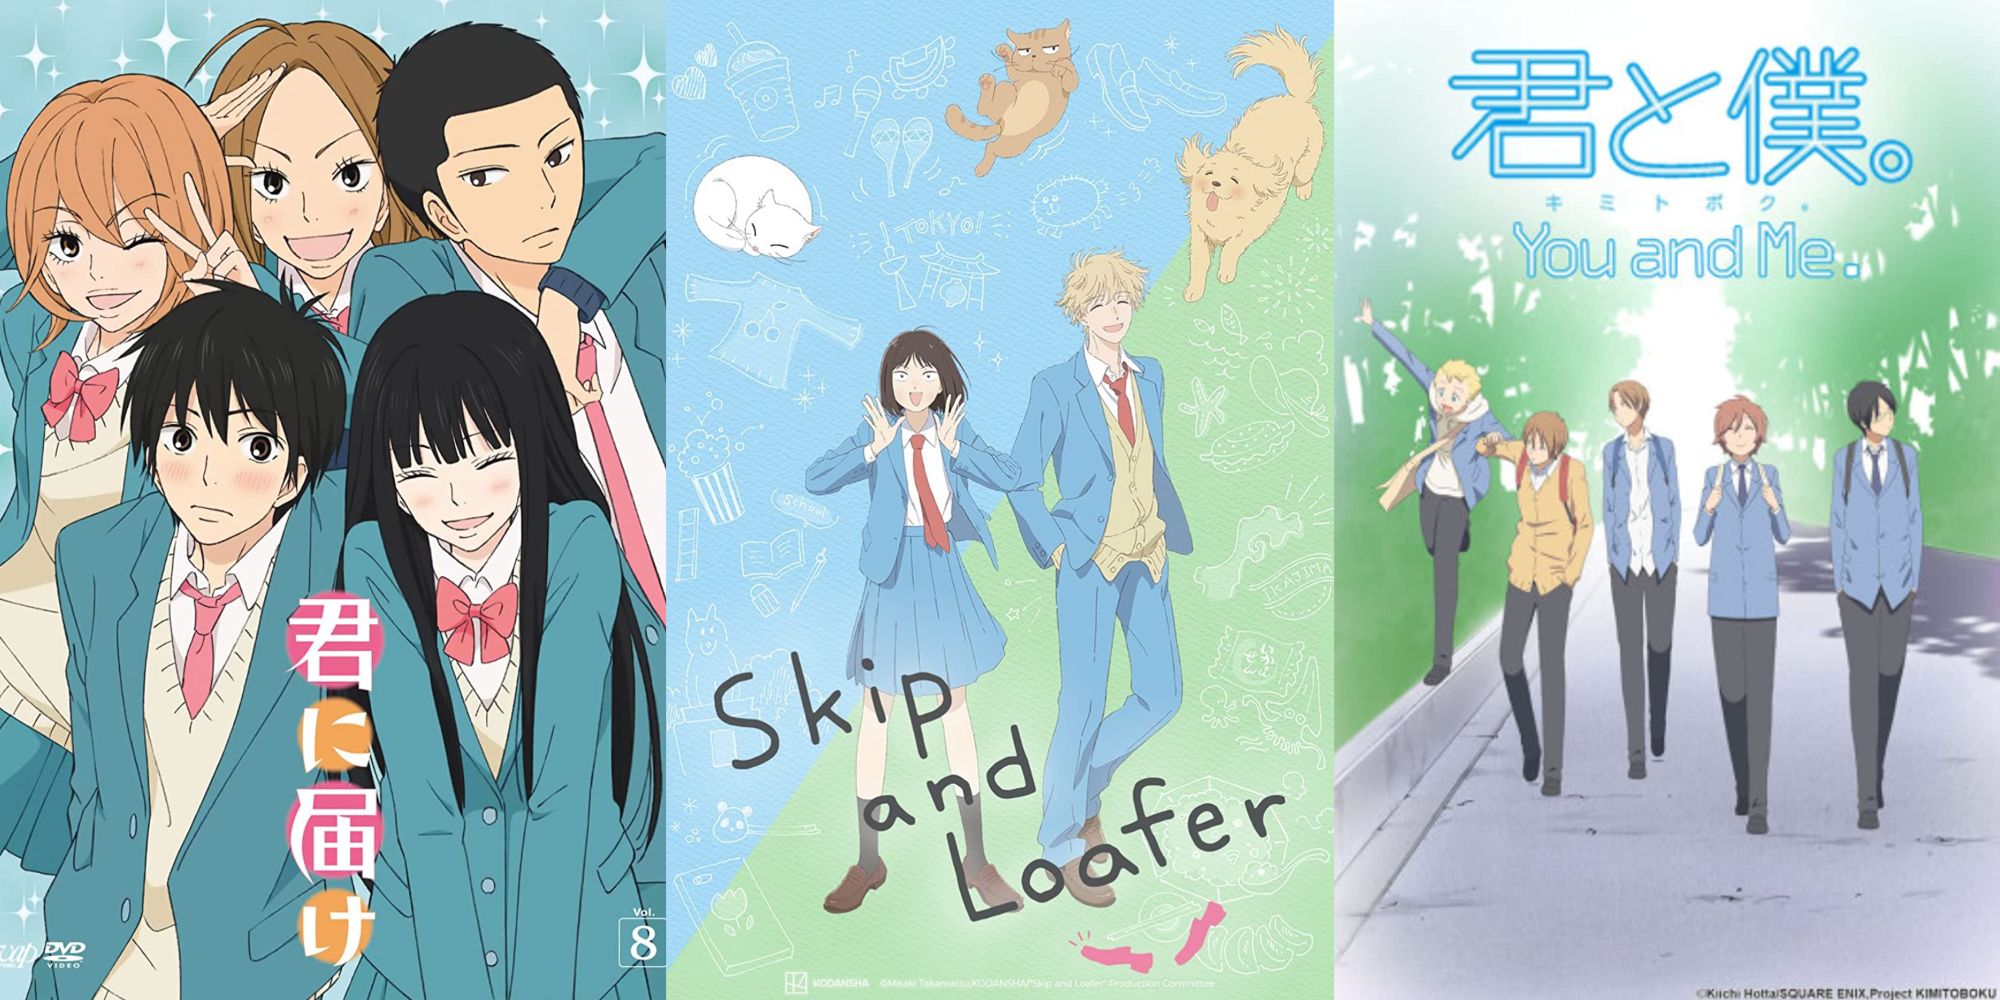 10 Slice Of Life Anime para assistir se você ama Skip e Loafer - AnimeBox